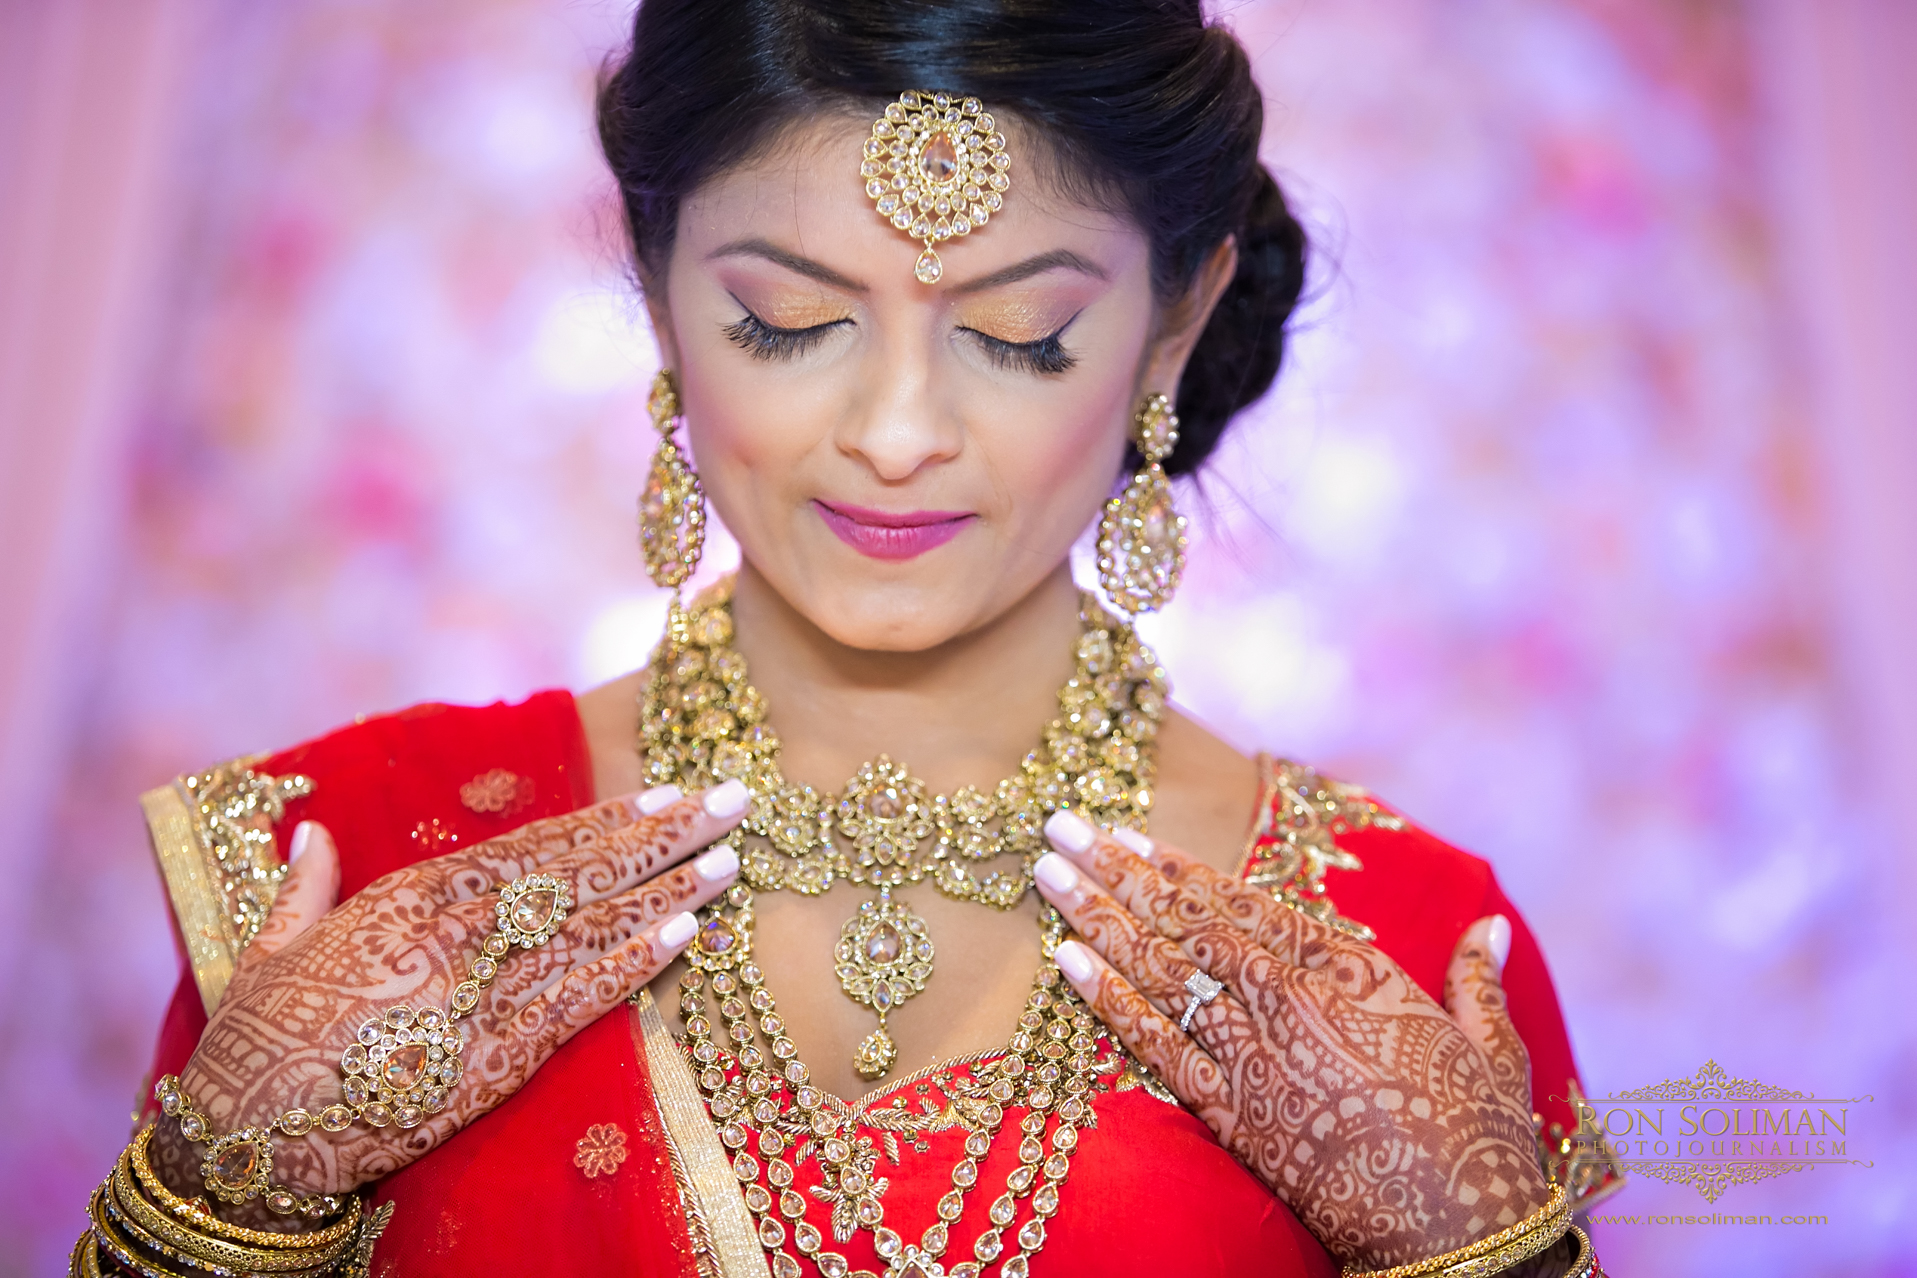 Best wedding henna photos